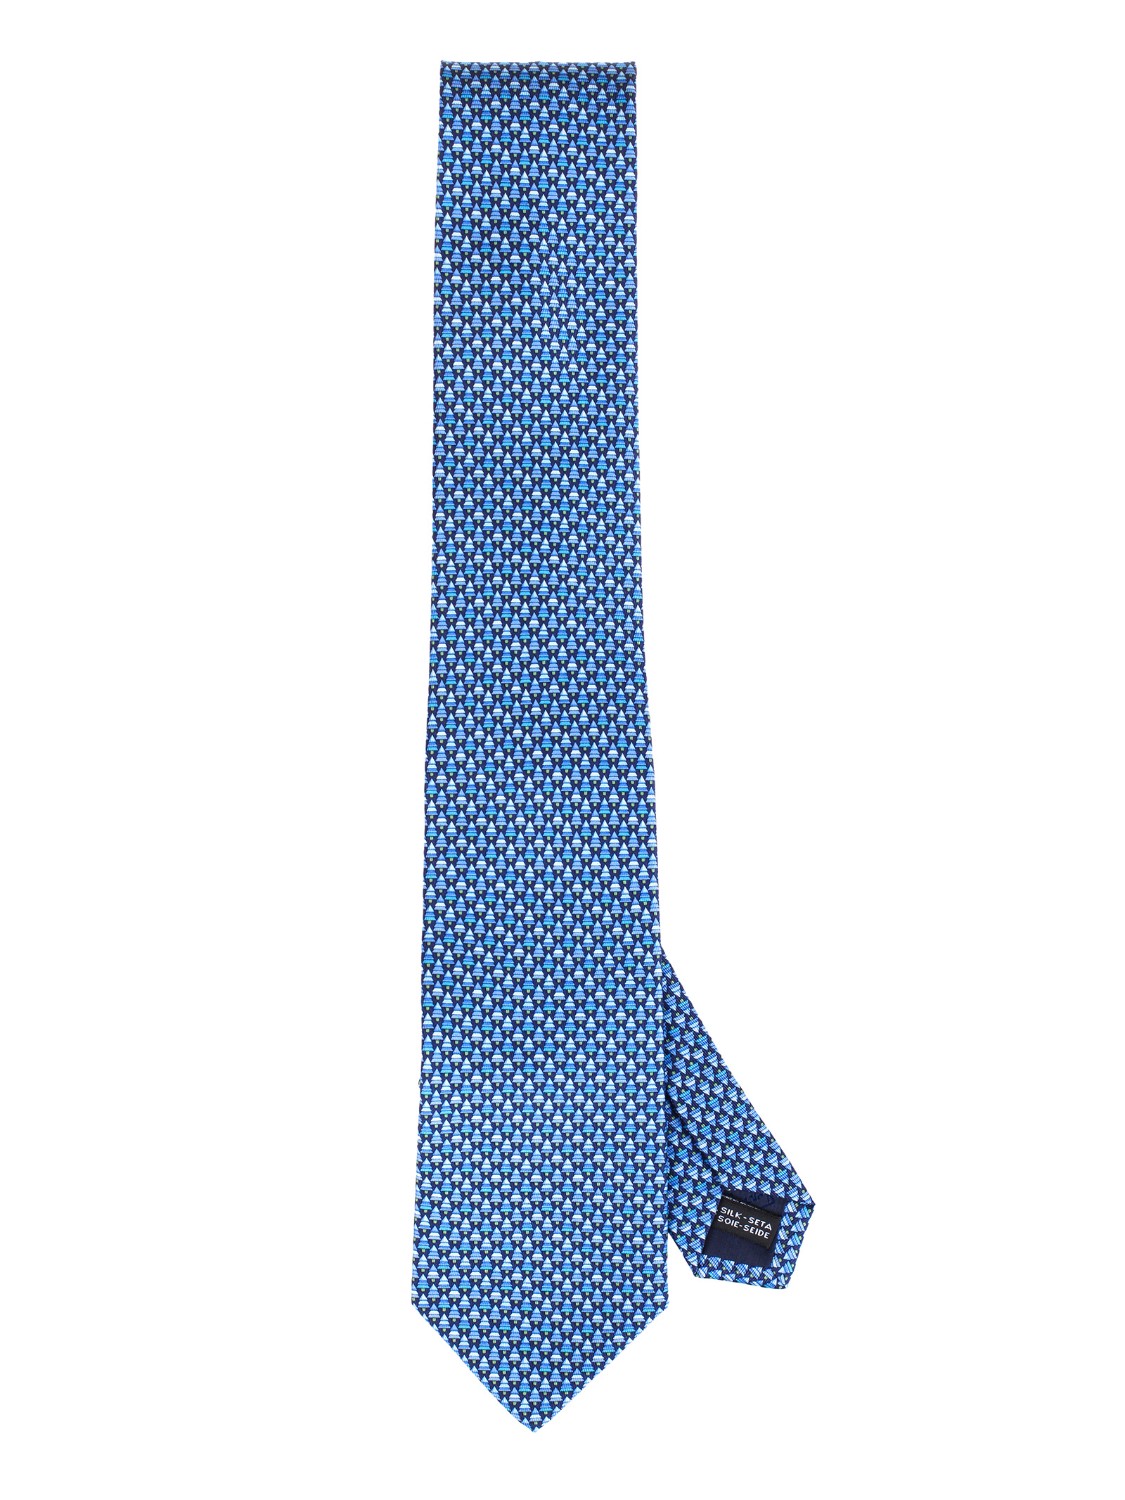 shop SALVATORE FERRAGAMO  Cravatta: Salvatore Ferragamo cravatta in seta con stampa "Foglie".
Composizione: 100% seta.
Made in italy.. 357739 CR 4 FOGLIA-002 number 6722713